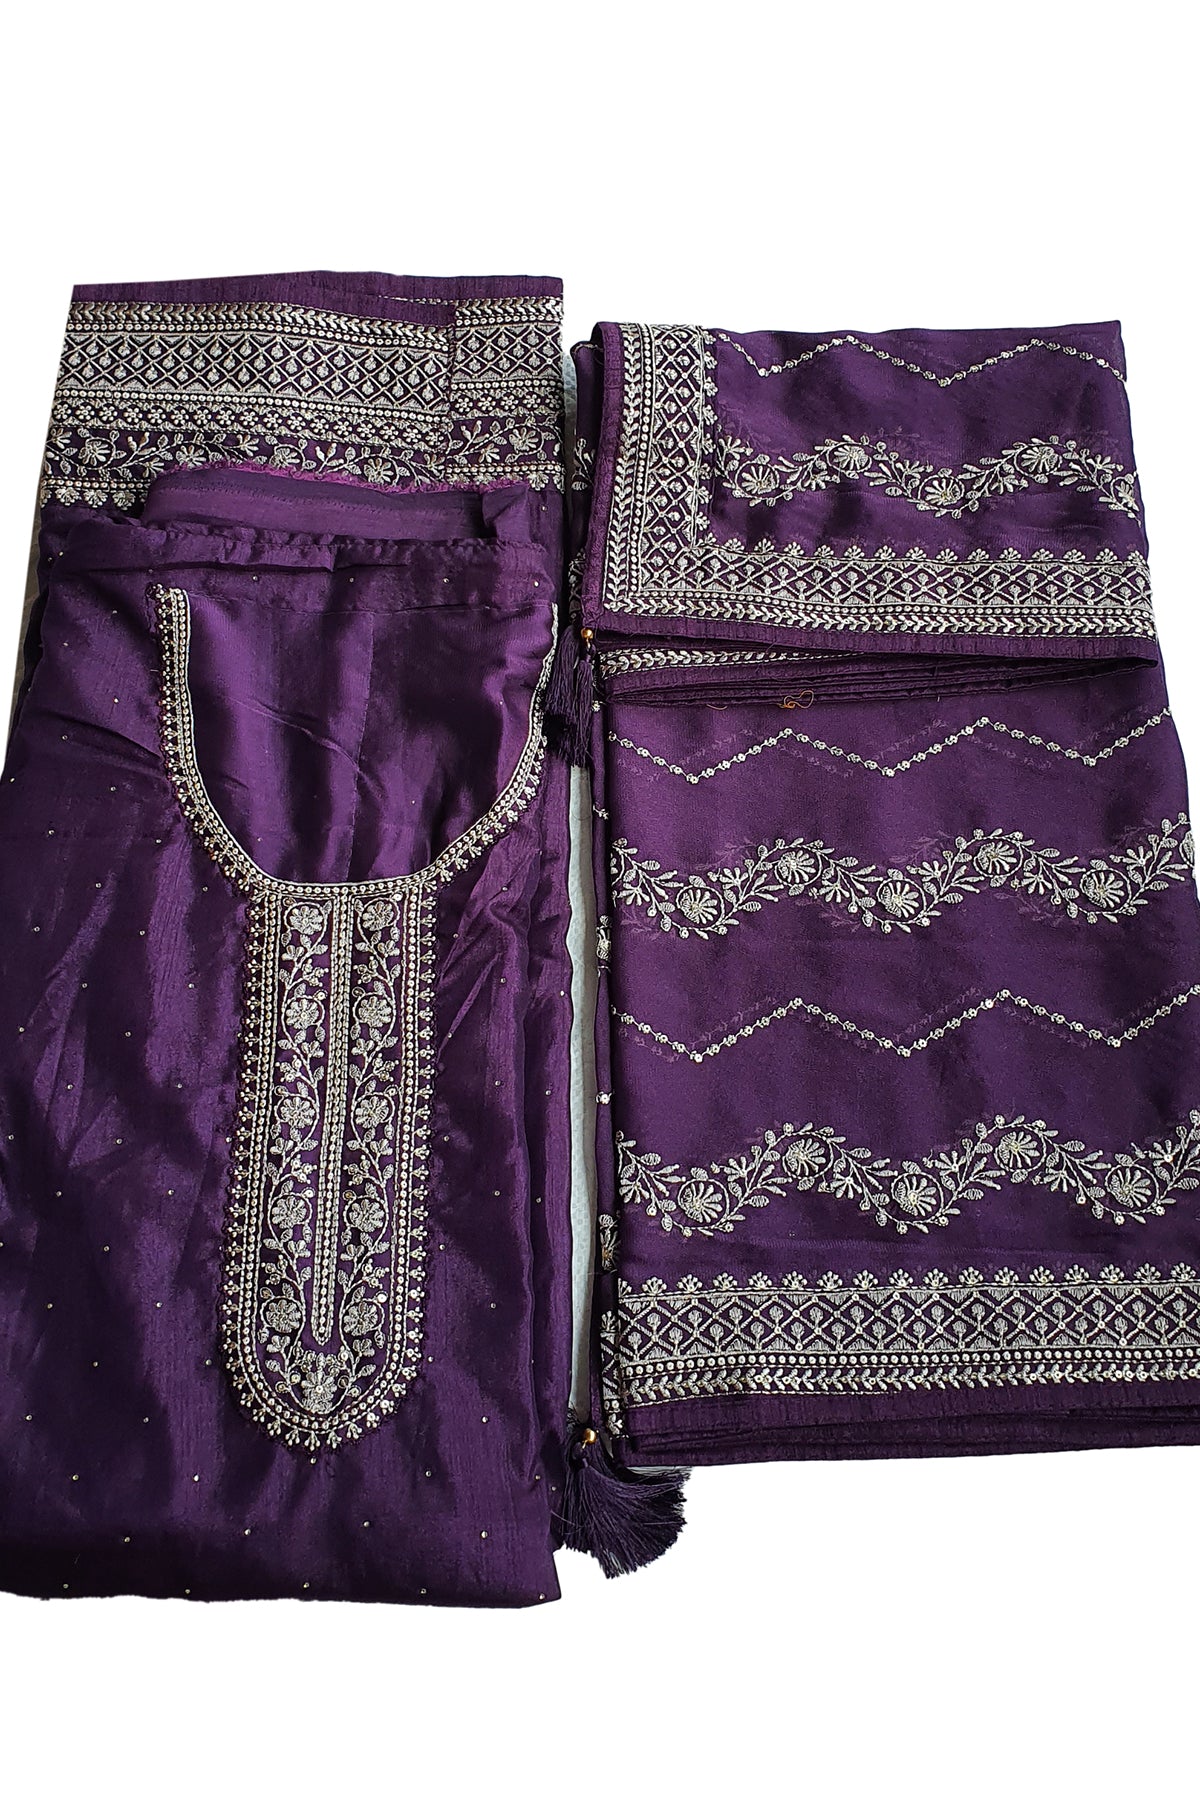 Purple Dola Silk Thread Embroidered Suit Set